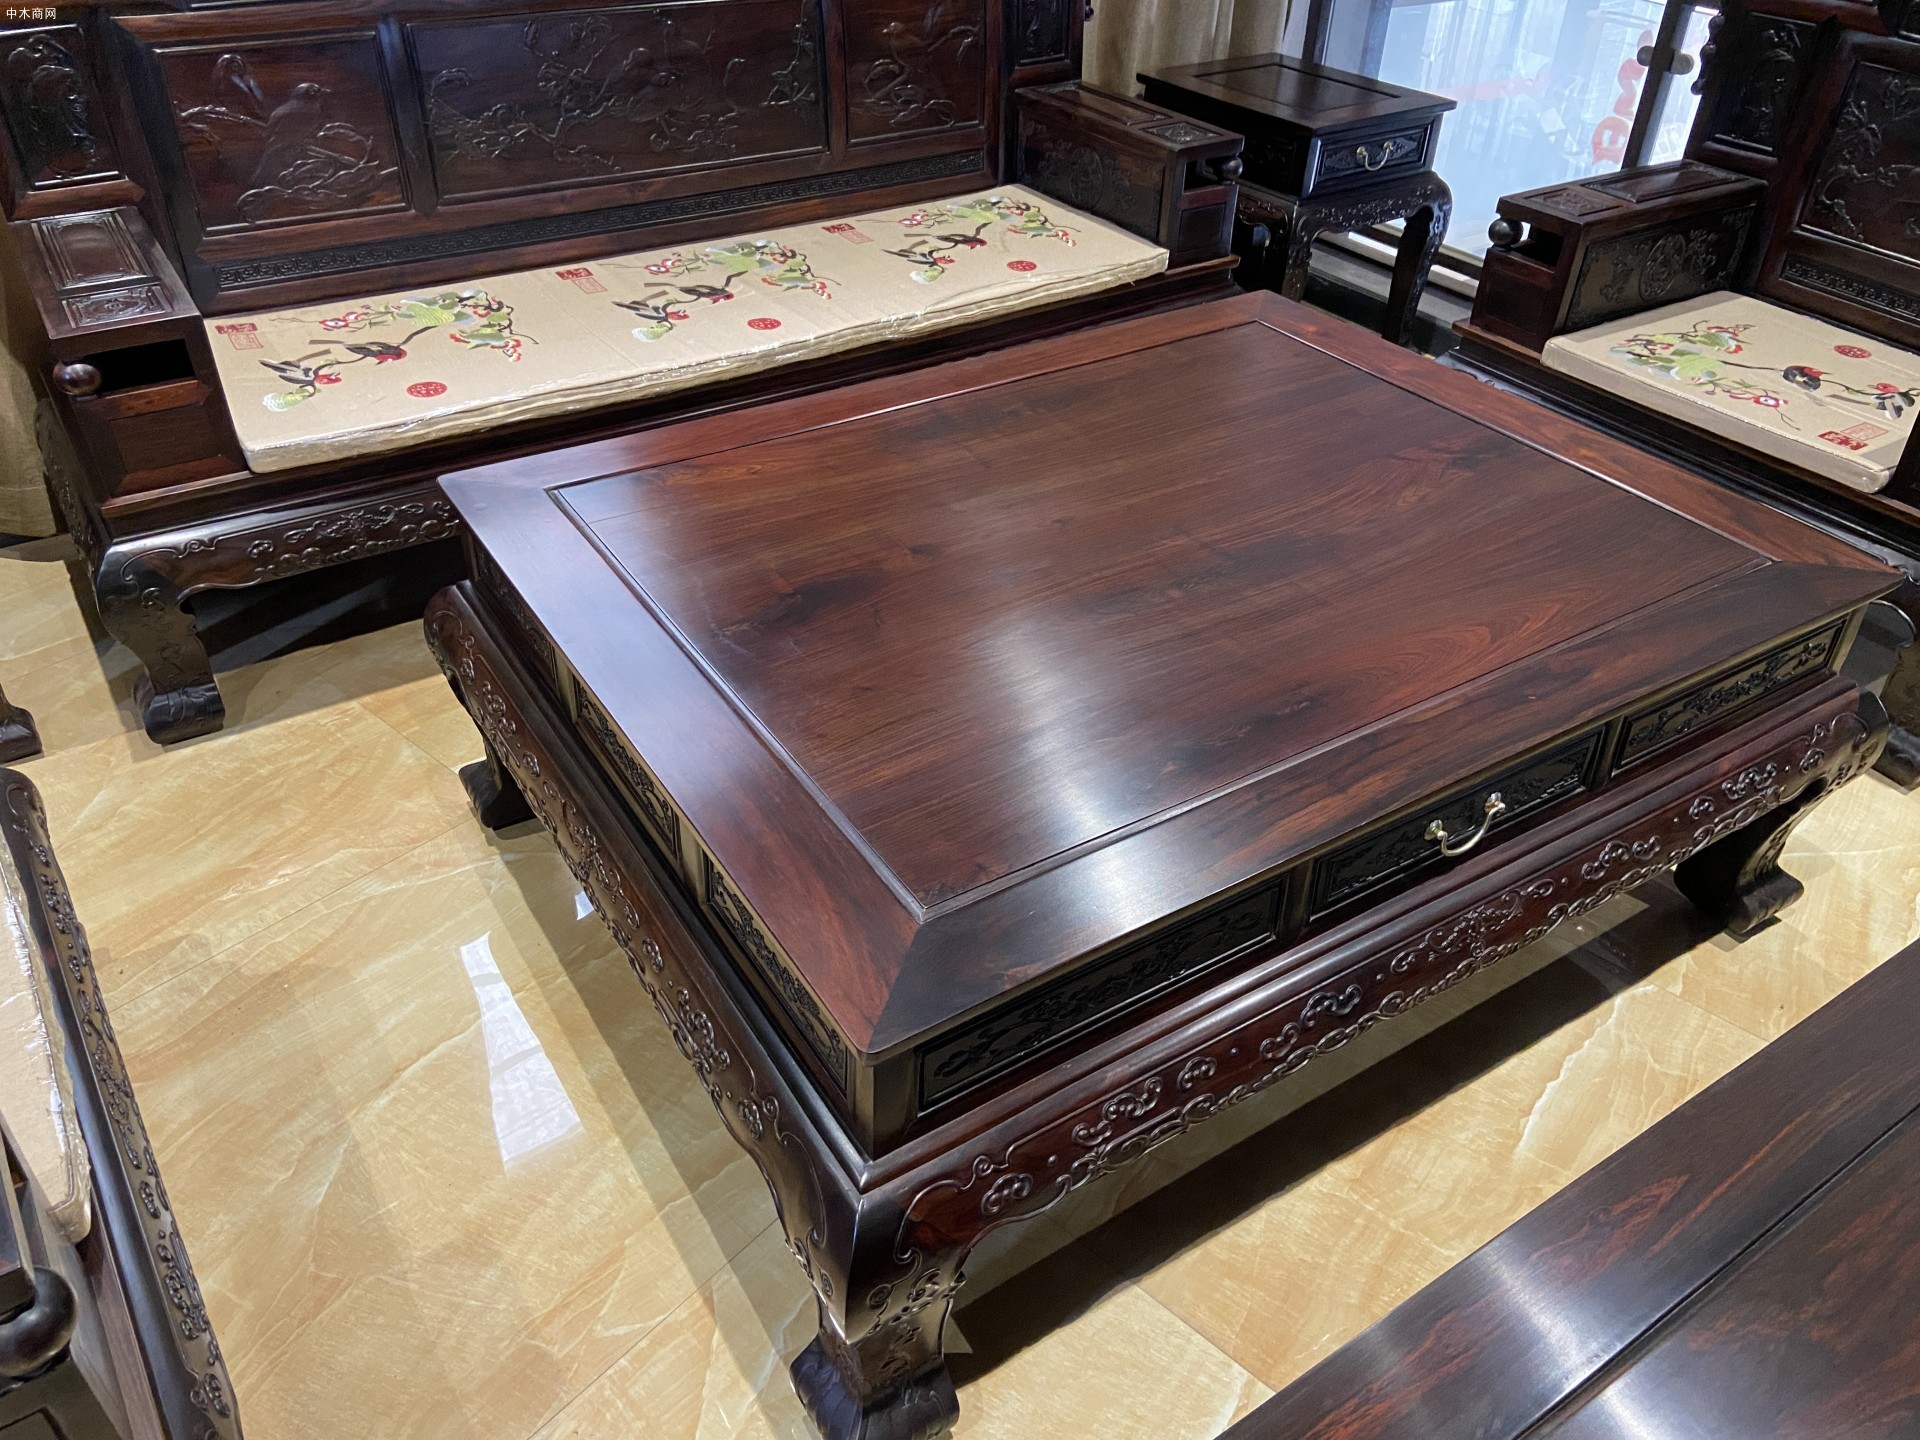 老挝大红酸枝红木家具客厅沙发组合七件套价格及图片品牌